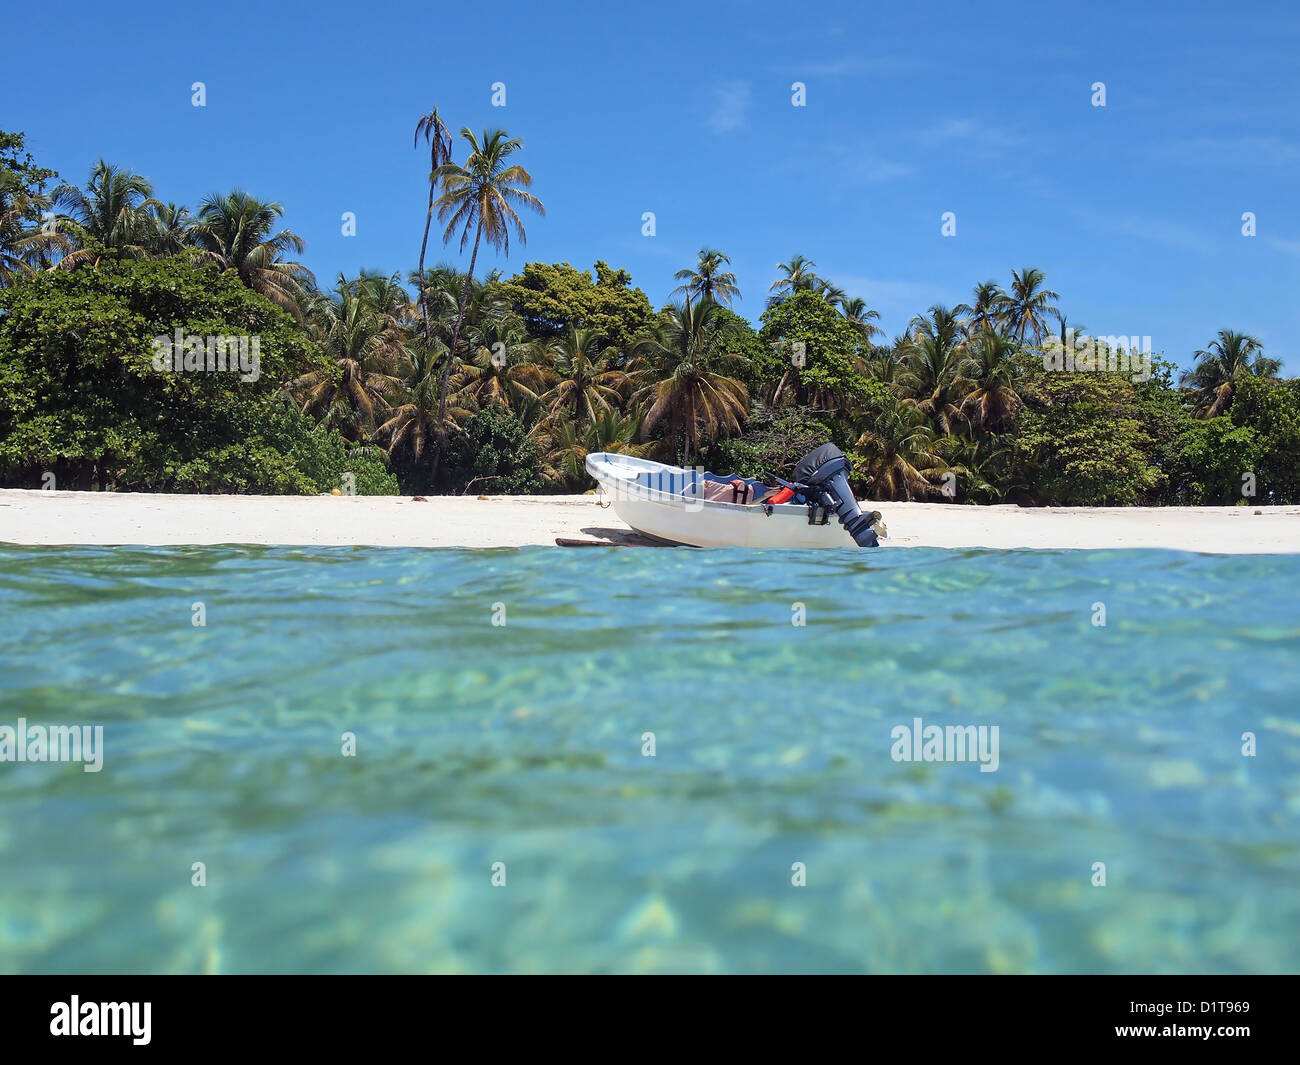 Barca atterrato sulla spiaggia sabbiosa spiaggia con vegetazione tropicale, visto dalla superficie dell'acqua, il mare dei Caraibi, America centrale e di Panama Foto Stock